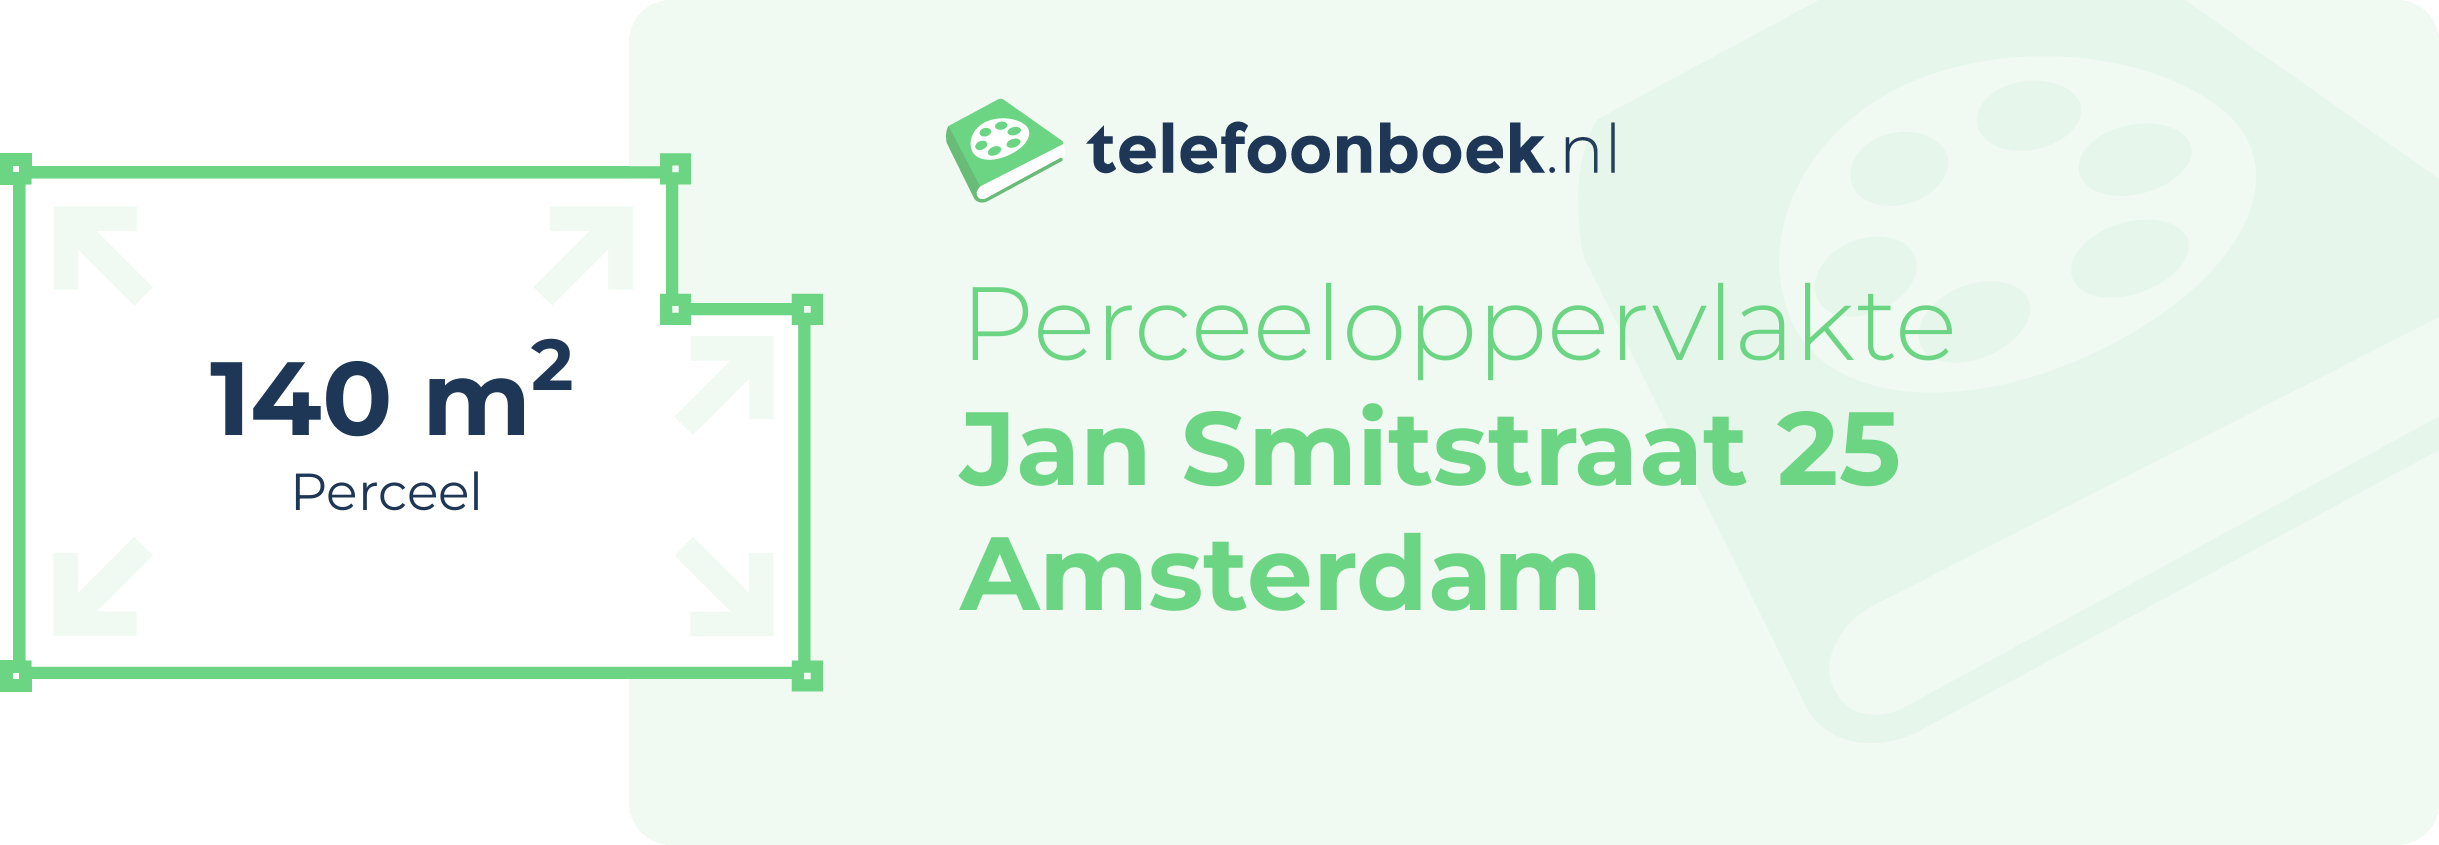 Perceeloppervlakte Jan Smitstraat 25 Amsterdam